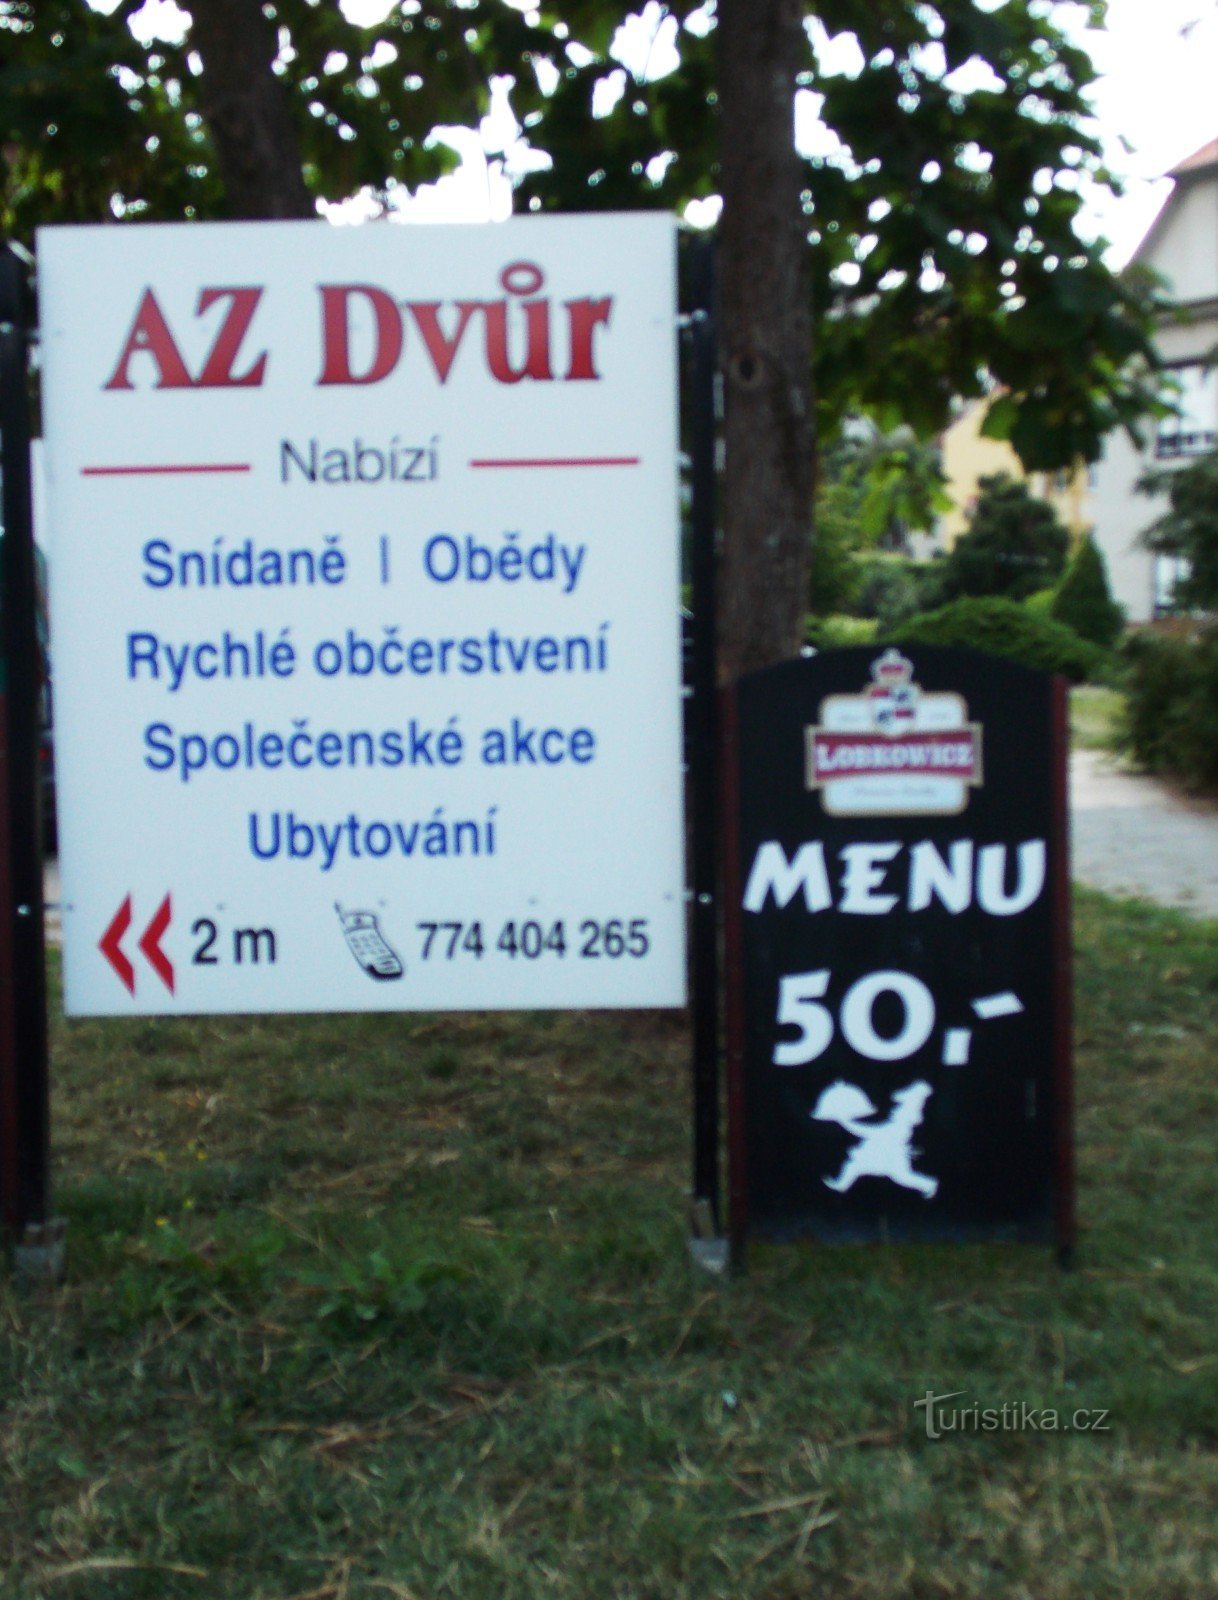 AZ dvůr étterem Luhačovicében